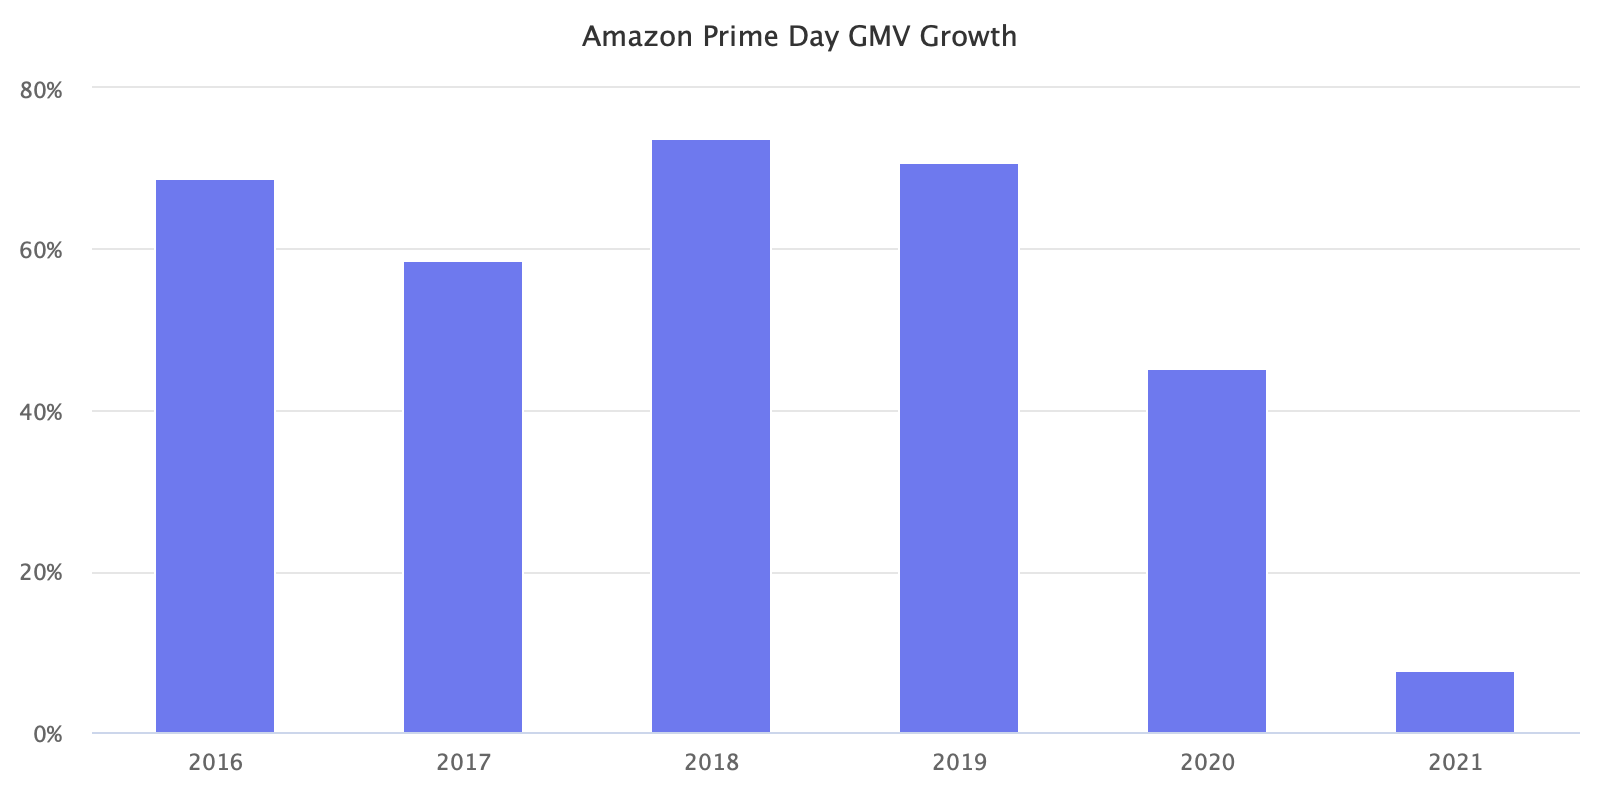 Amazon Prime Day GMV Growth